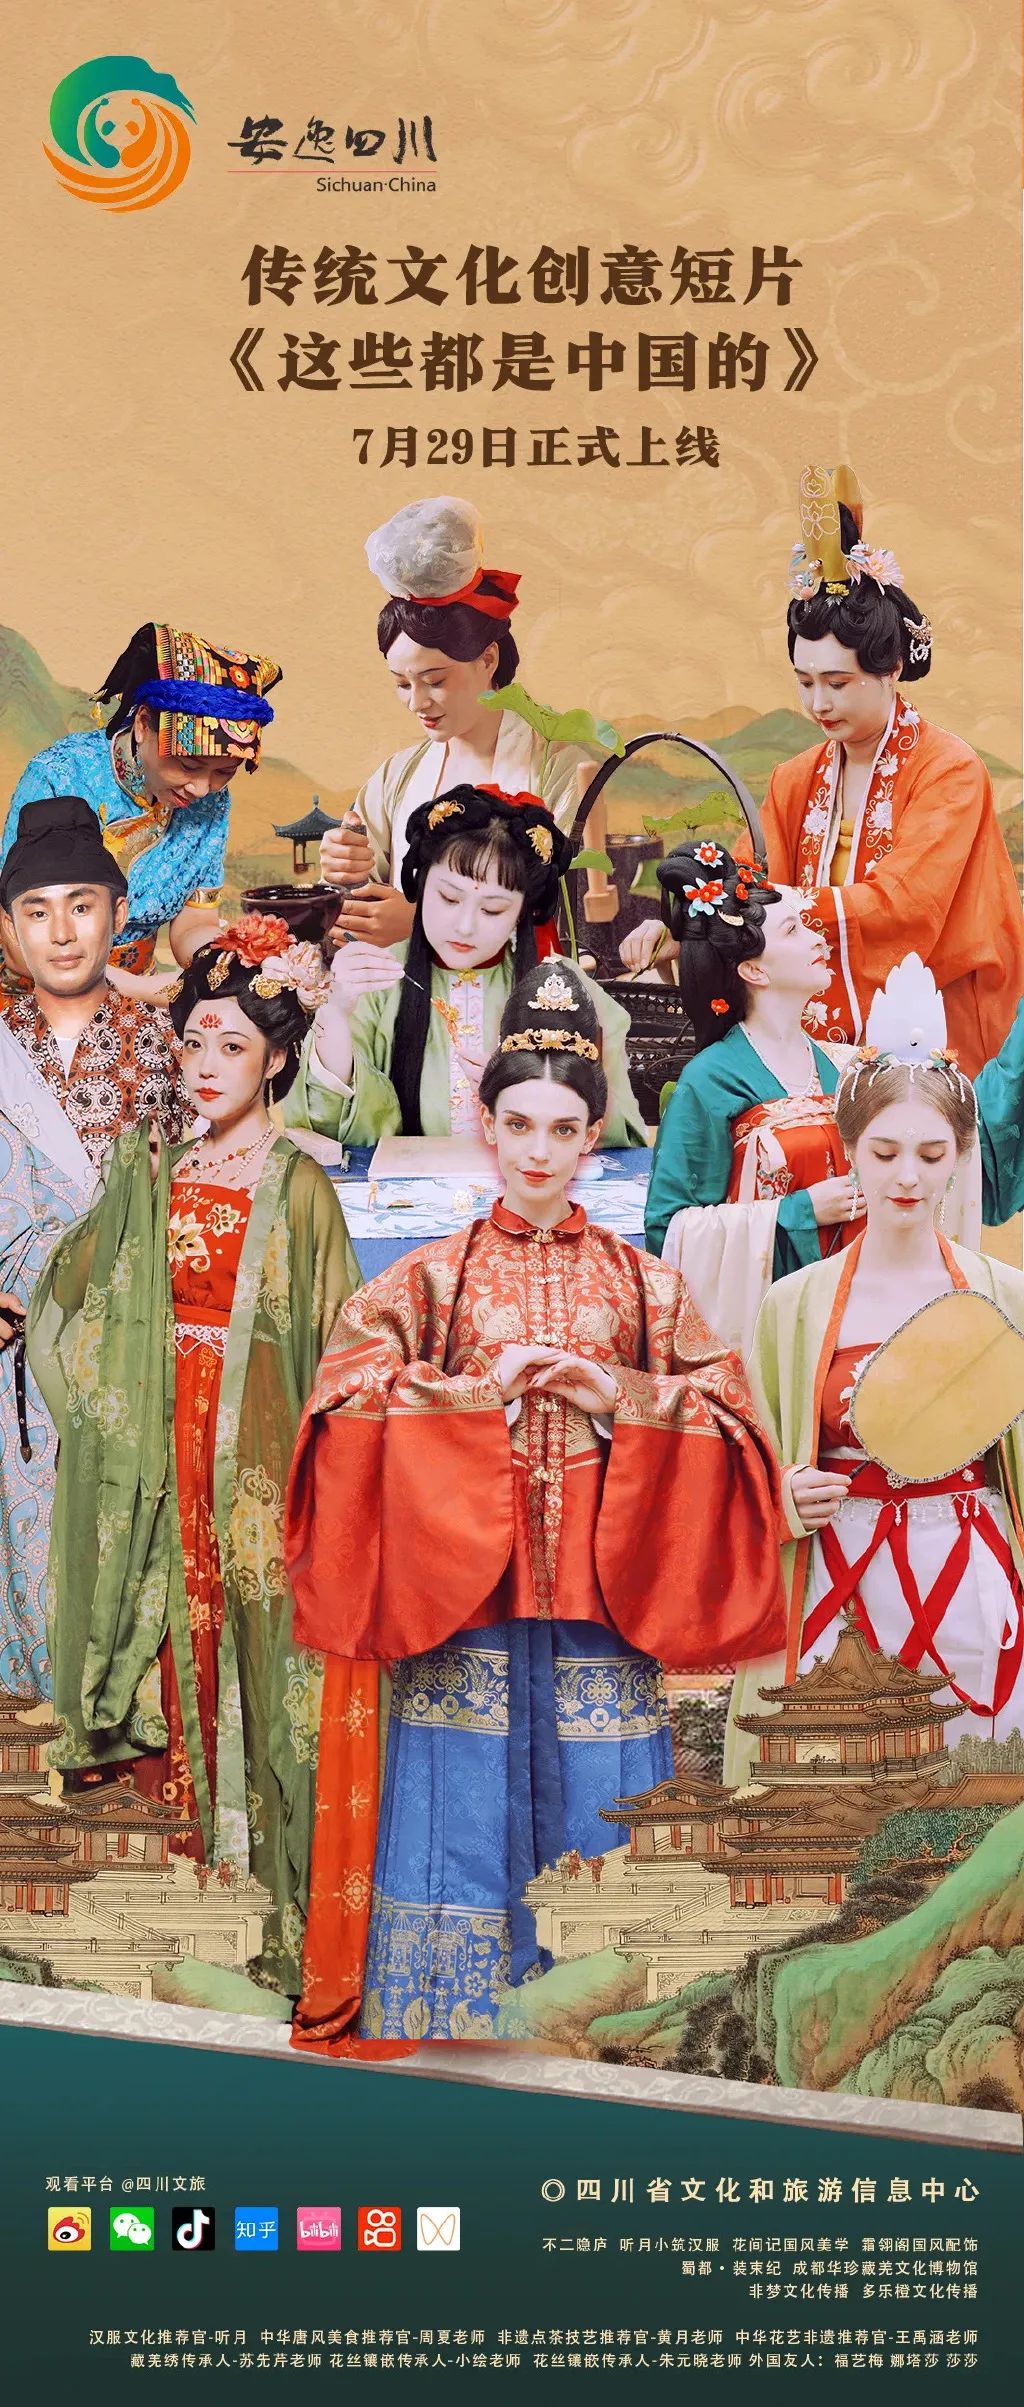 央视频文创短片《这些都是中国的》：外国友人沉浸式体验传统文化 - 第1张